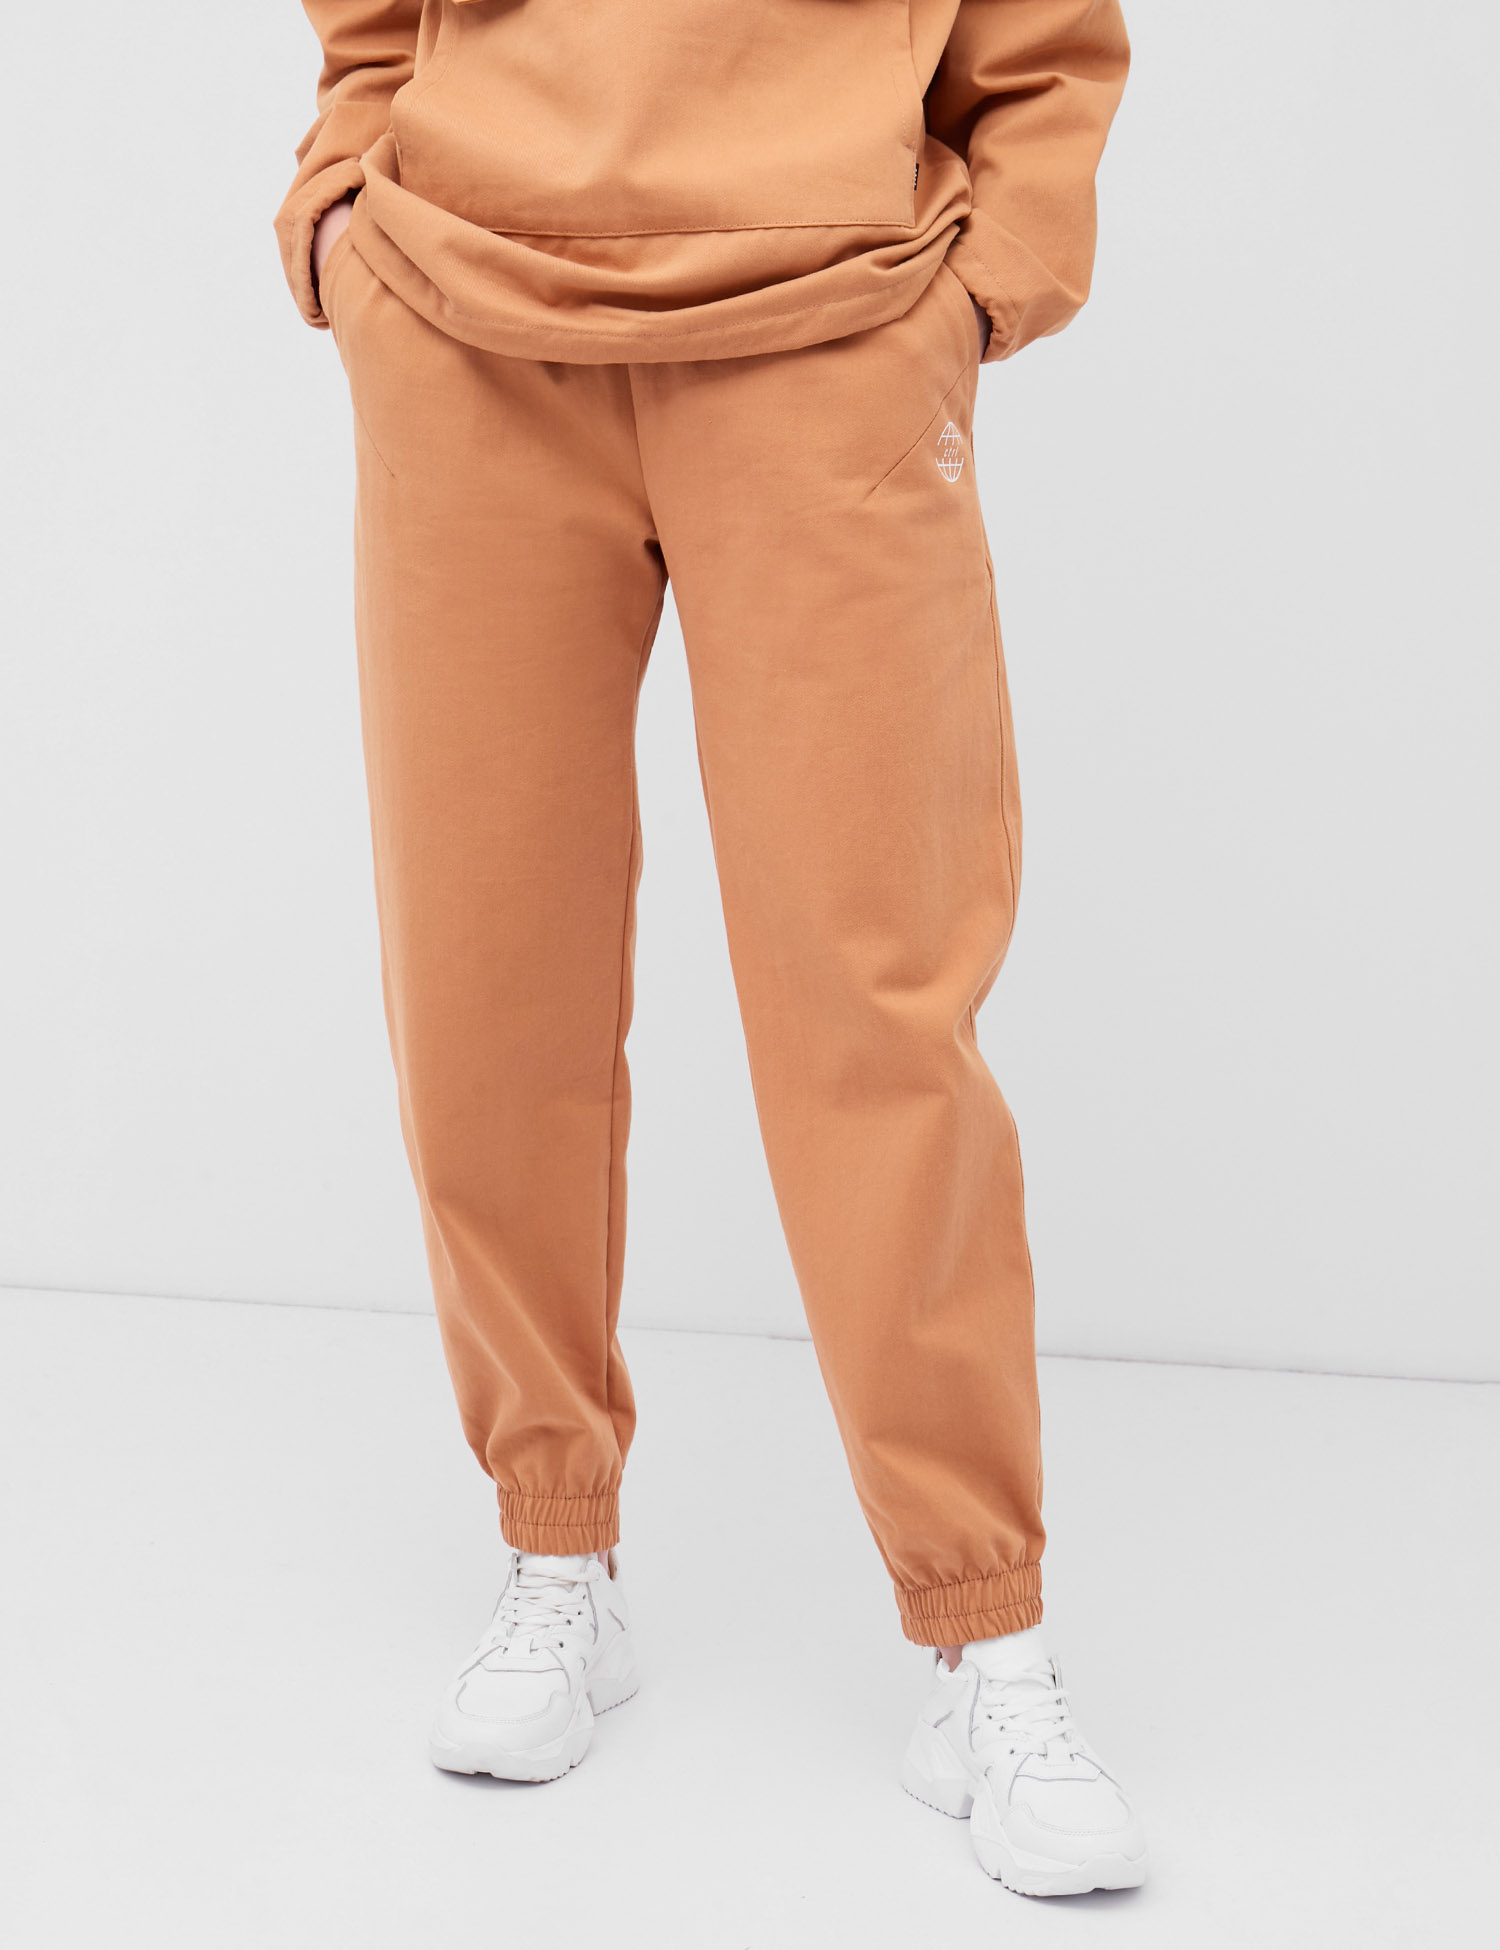 Картинка Жіночі помаранчеві штани